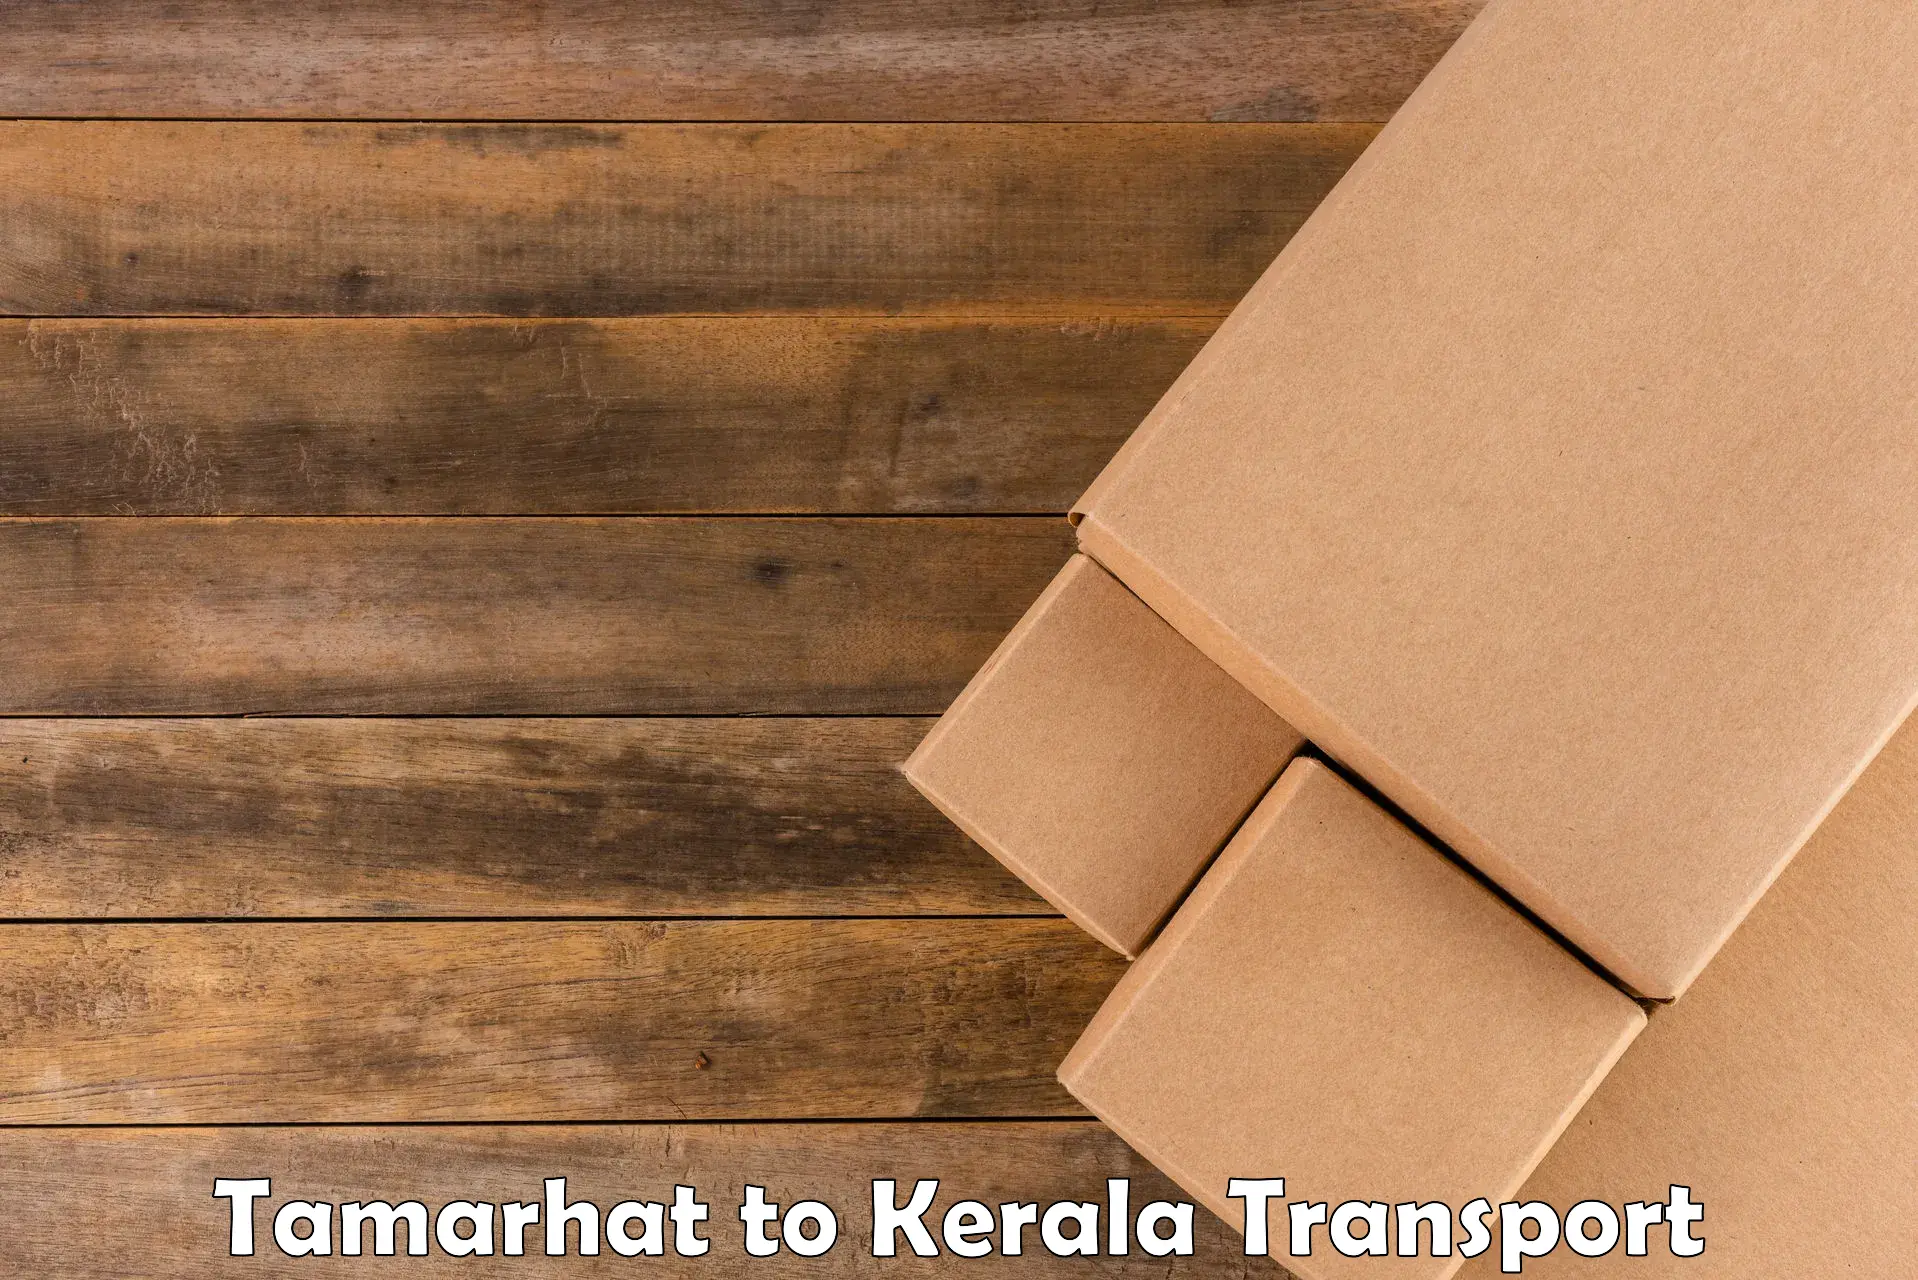 Transport in sharing Tamarhat to Kozhikode